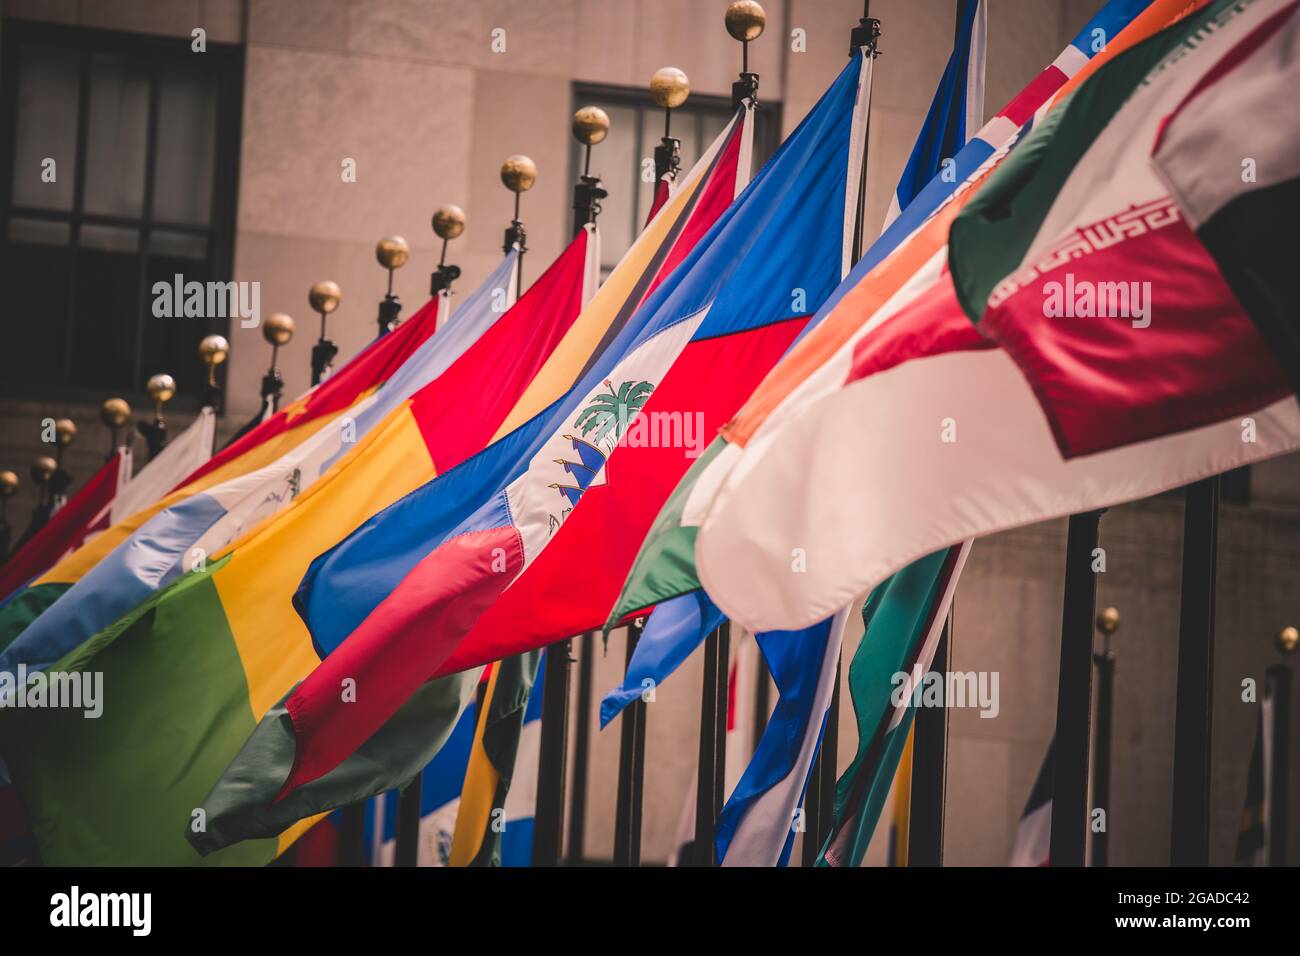 Banderas coloridas de varios países del mundo Foto de stock